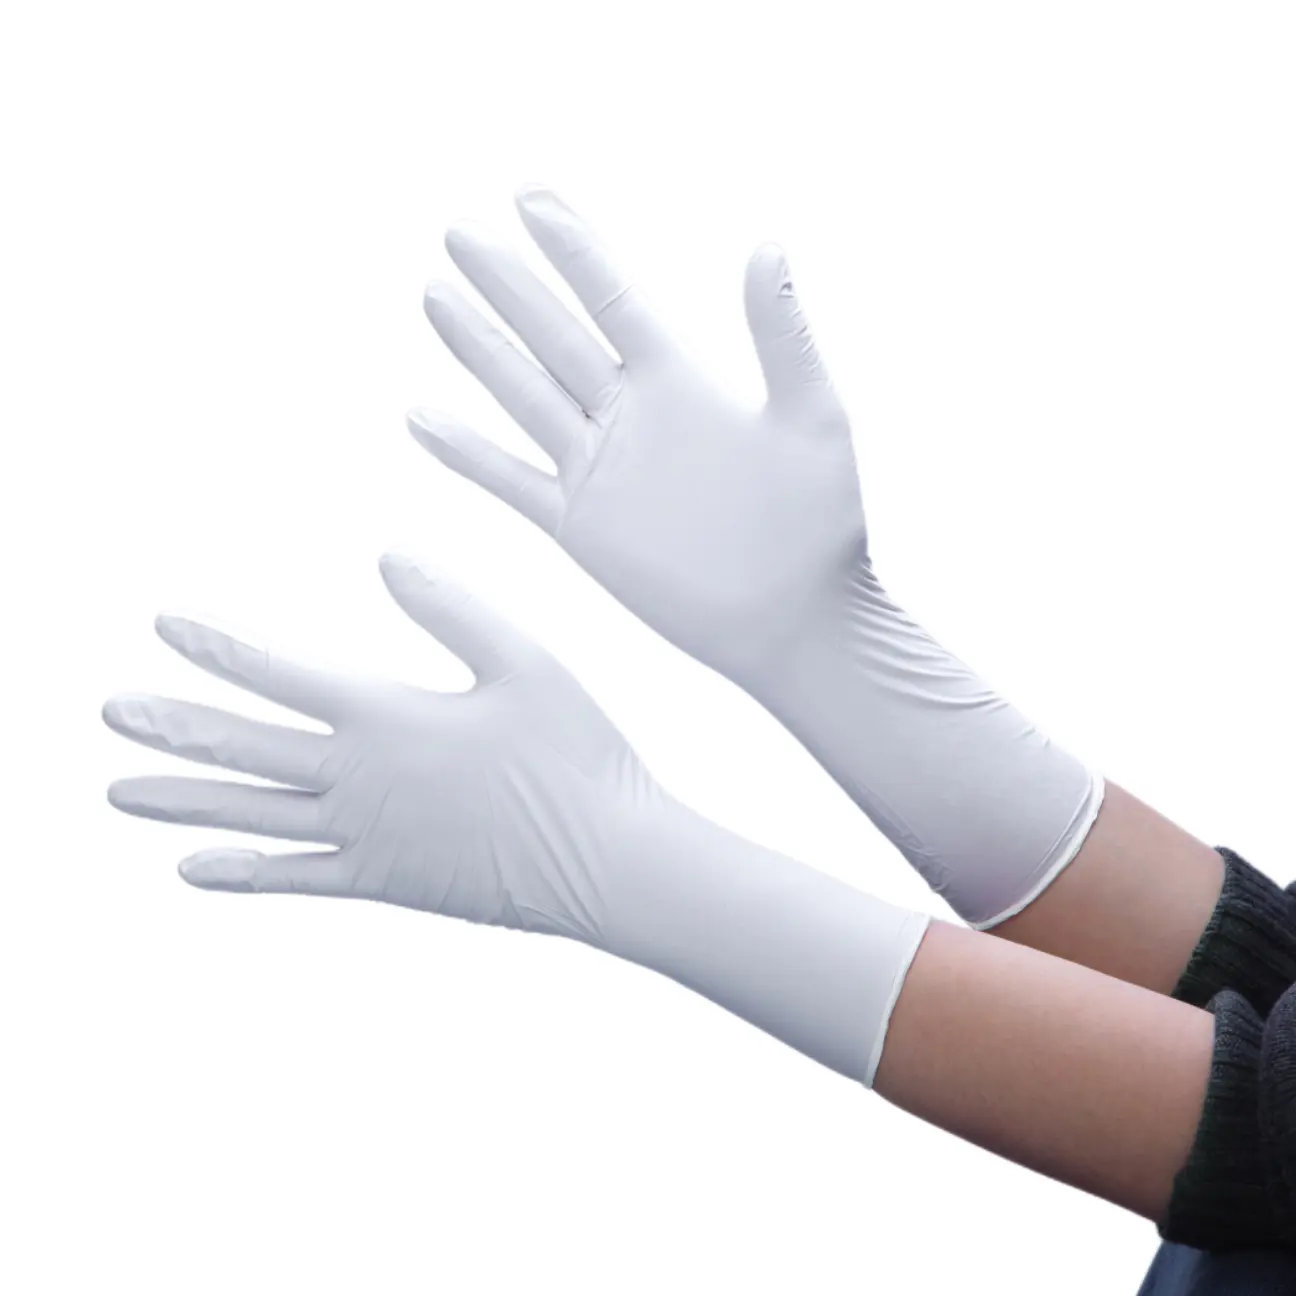 Temiz oda 9 12 inç ölüyor dövme Examin eldiven tek kullanımlık berber eldiven lateks ücretsiz nitril ev eldiven toz ücretsiz